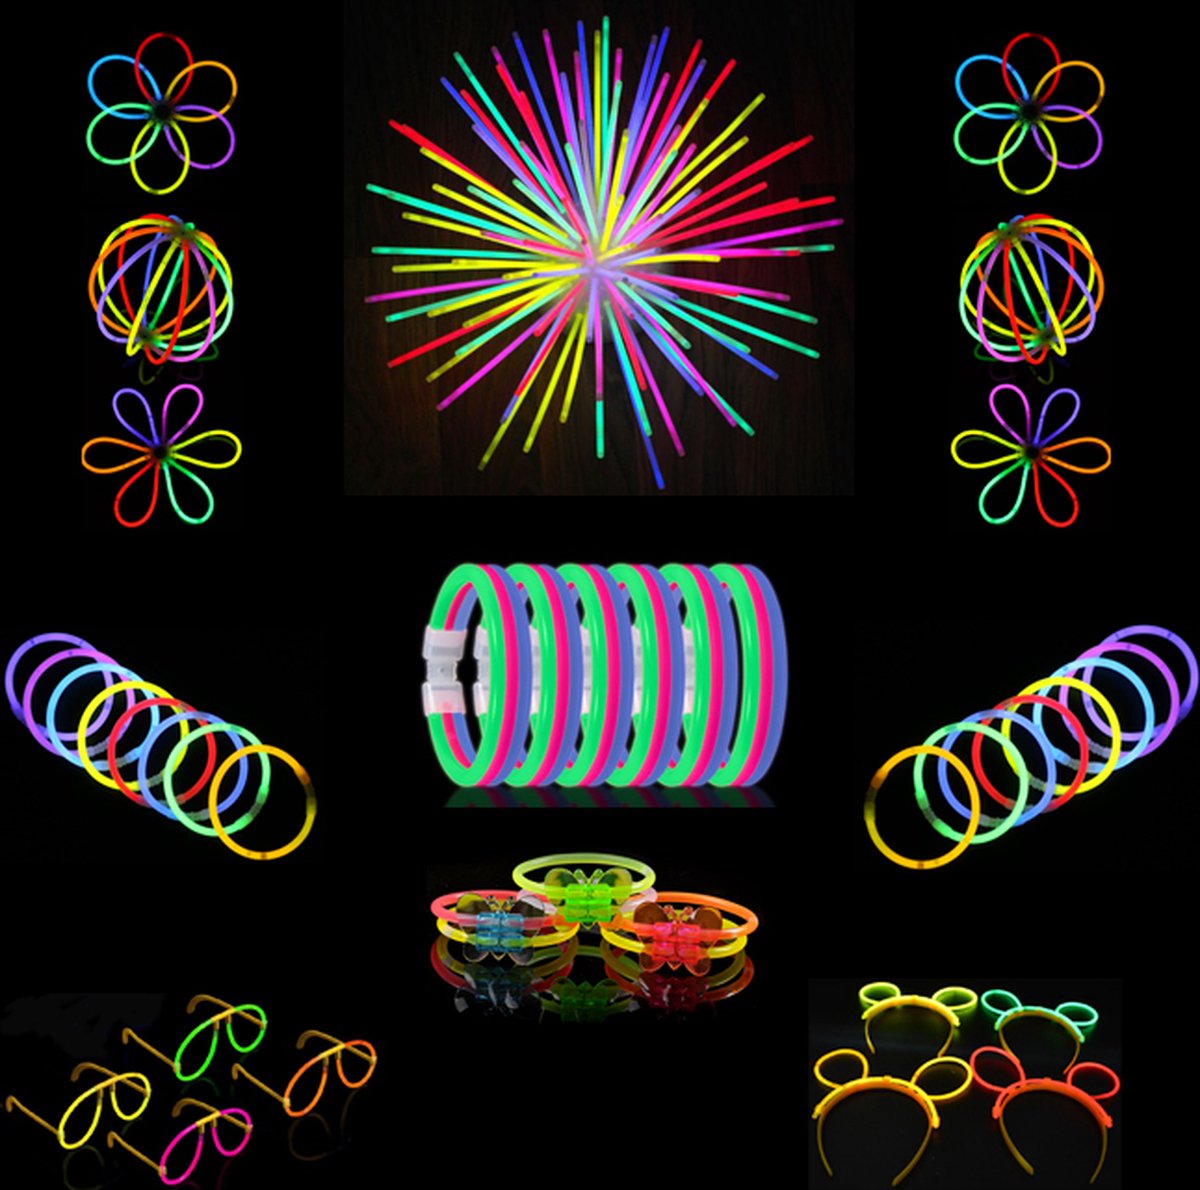 230 stuks 9 kleuren Glow sticks Feestje pakket S Party Bag MagieQ (100 glowsticks ) |Glow bril| Bunny oren|Bloemen connectors|Feest|Halloween|Kerst|kinderen neon party's decoratie Kerstmis Nieuwjaar - MagieQ